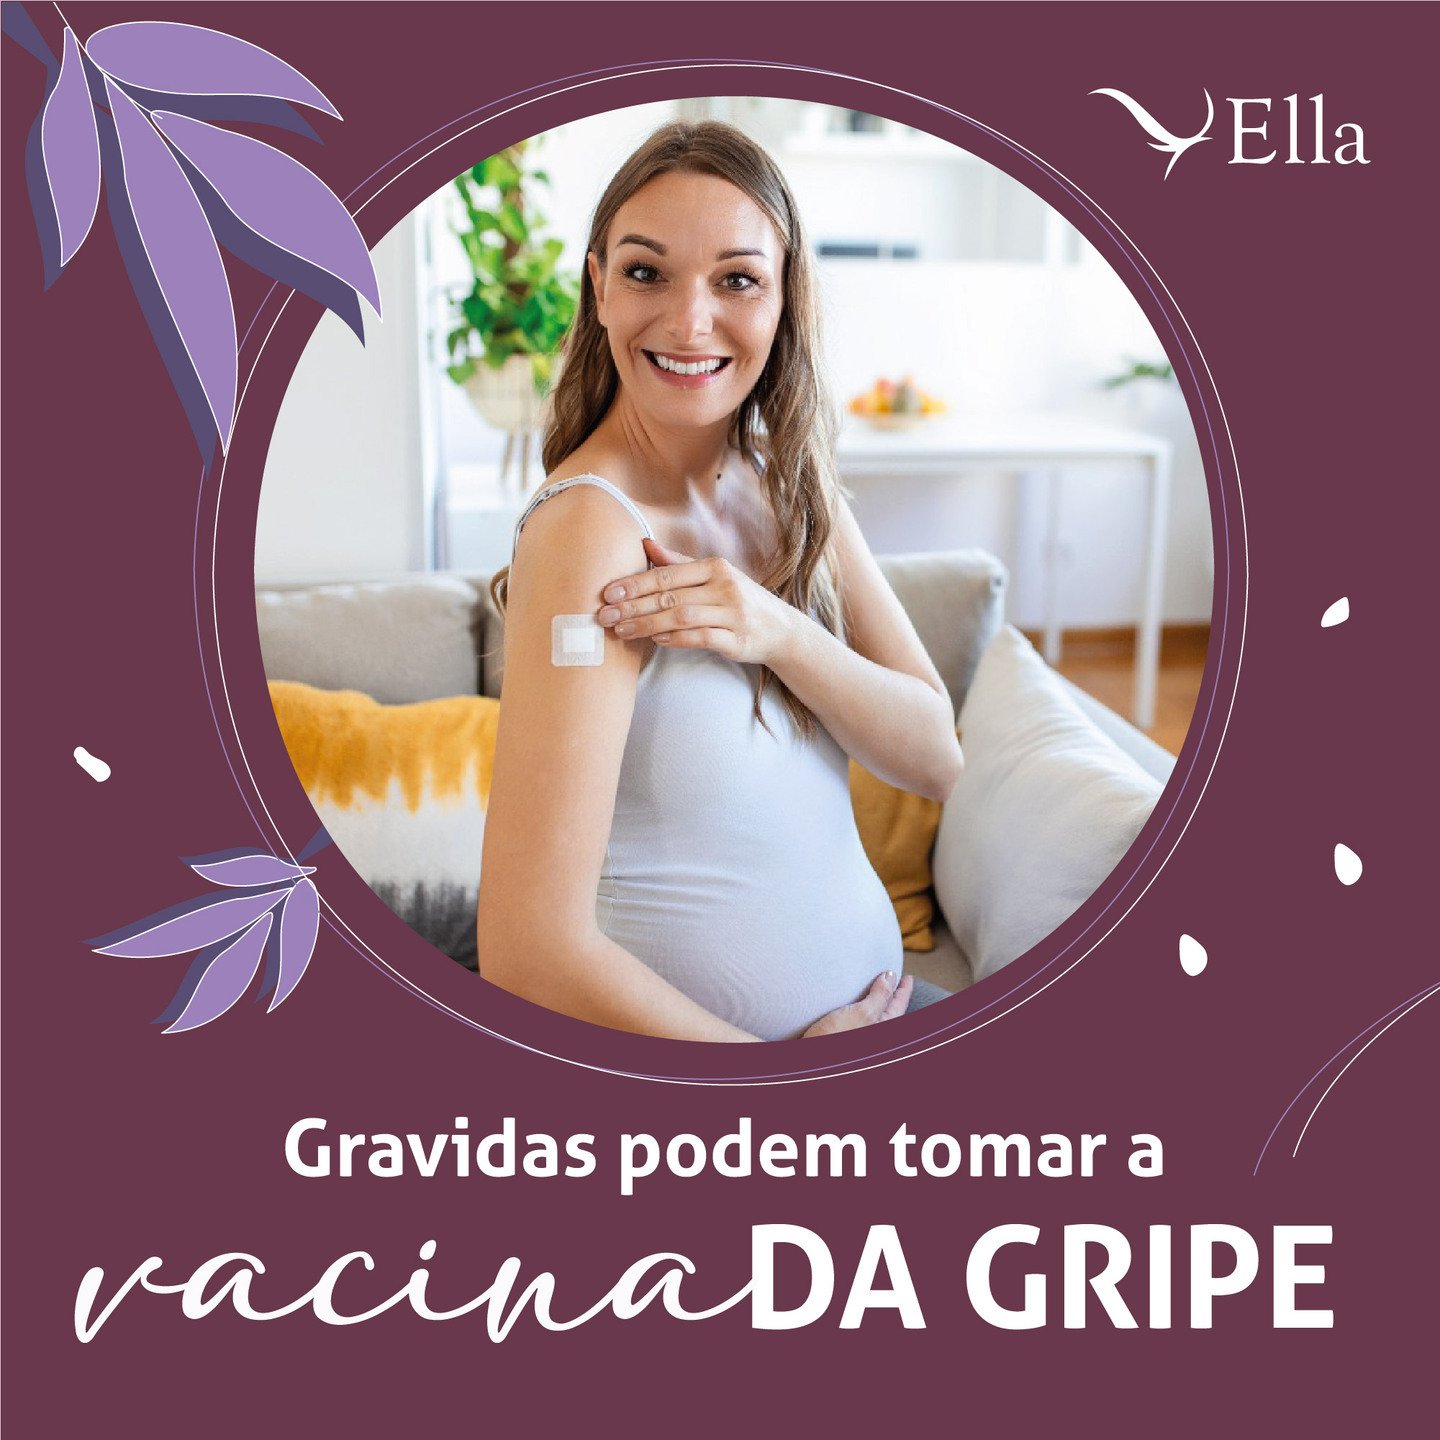 Gravidas podem tomar a vacina da gripe – Ella